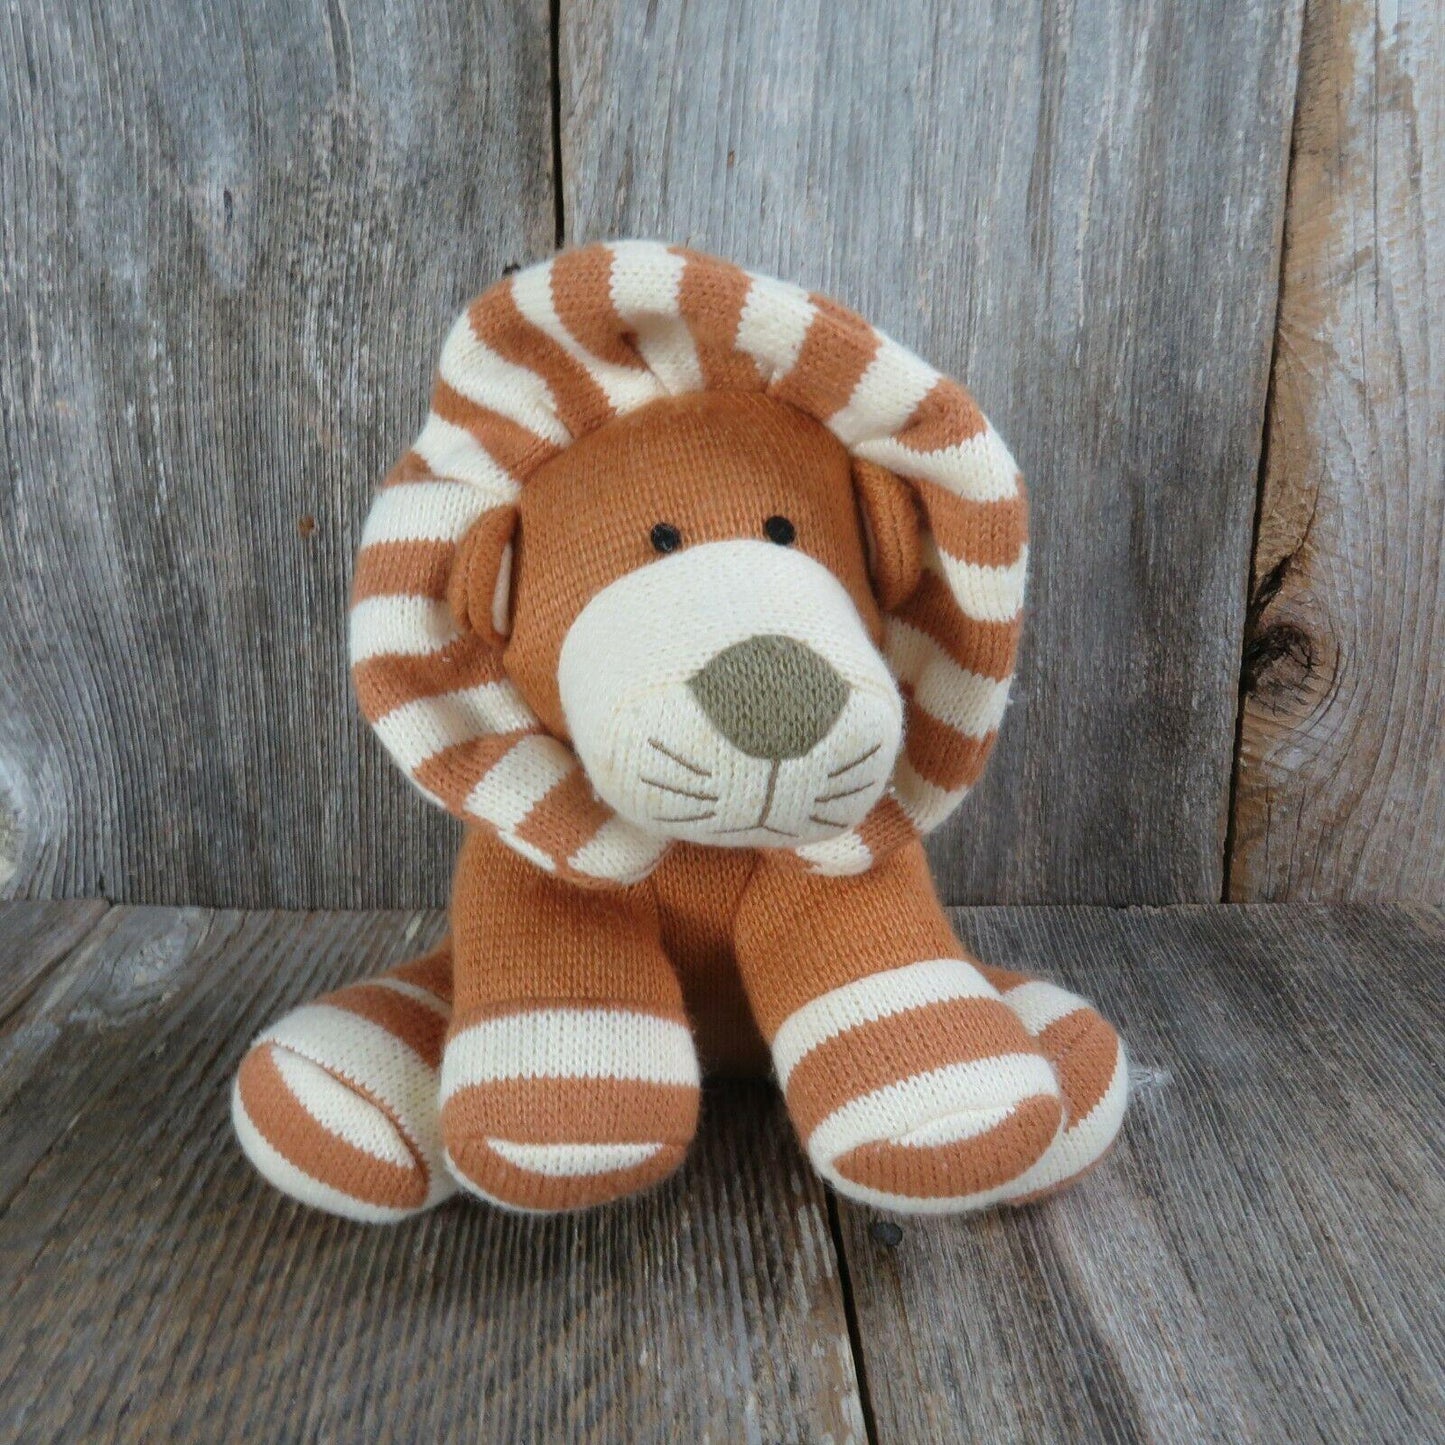 Lion Plush Knit Brown White Striped Circo Stuffed Animal